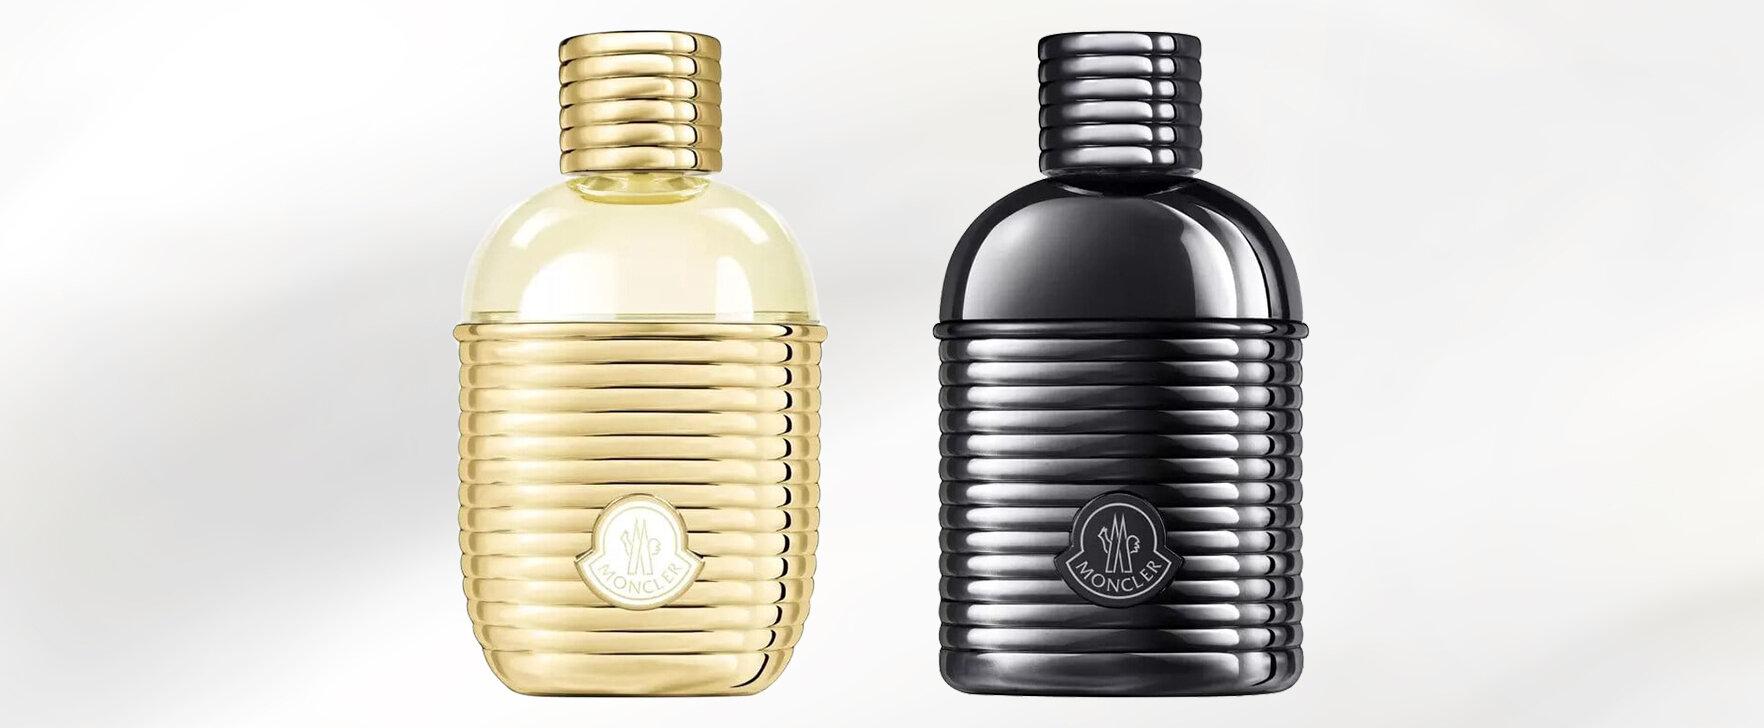 Moncler Sunrise: The New Eaux de Parfum From Moncler